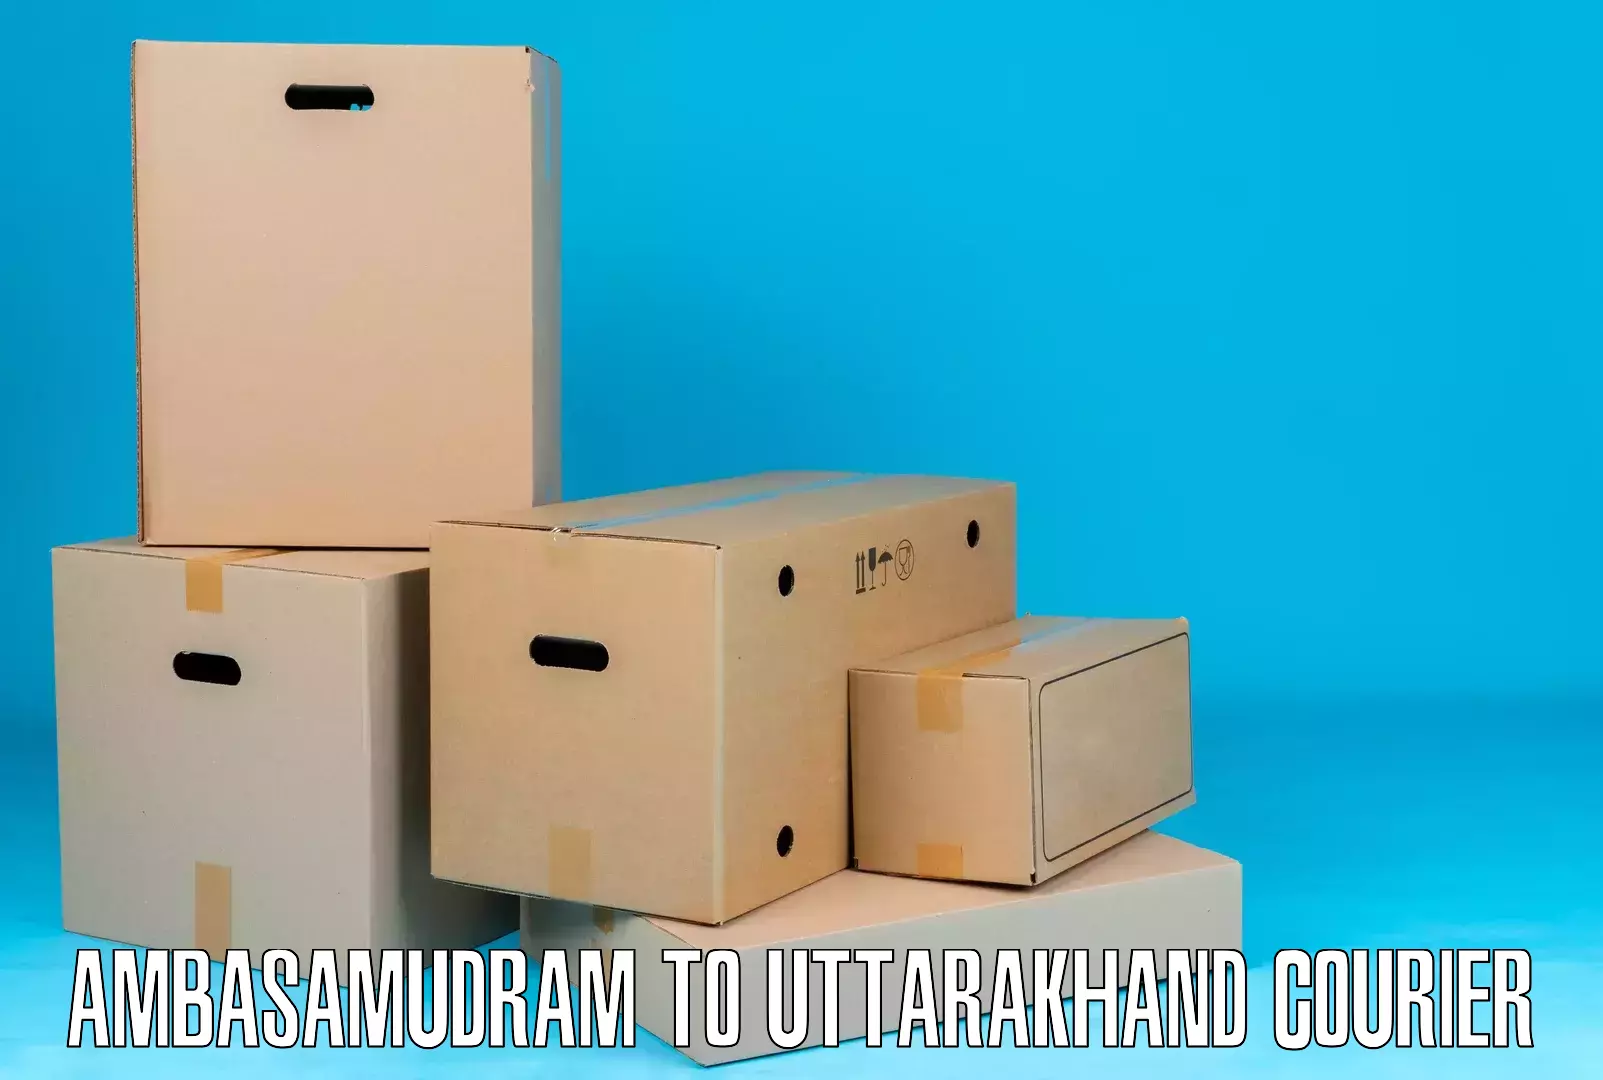 Urban courier service in Ambasamudram to Kotdwara